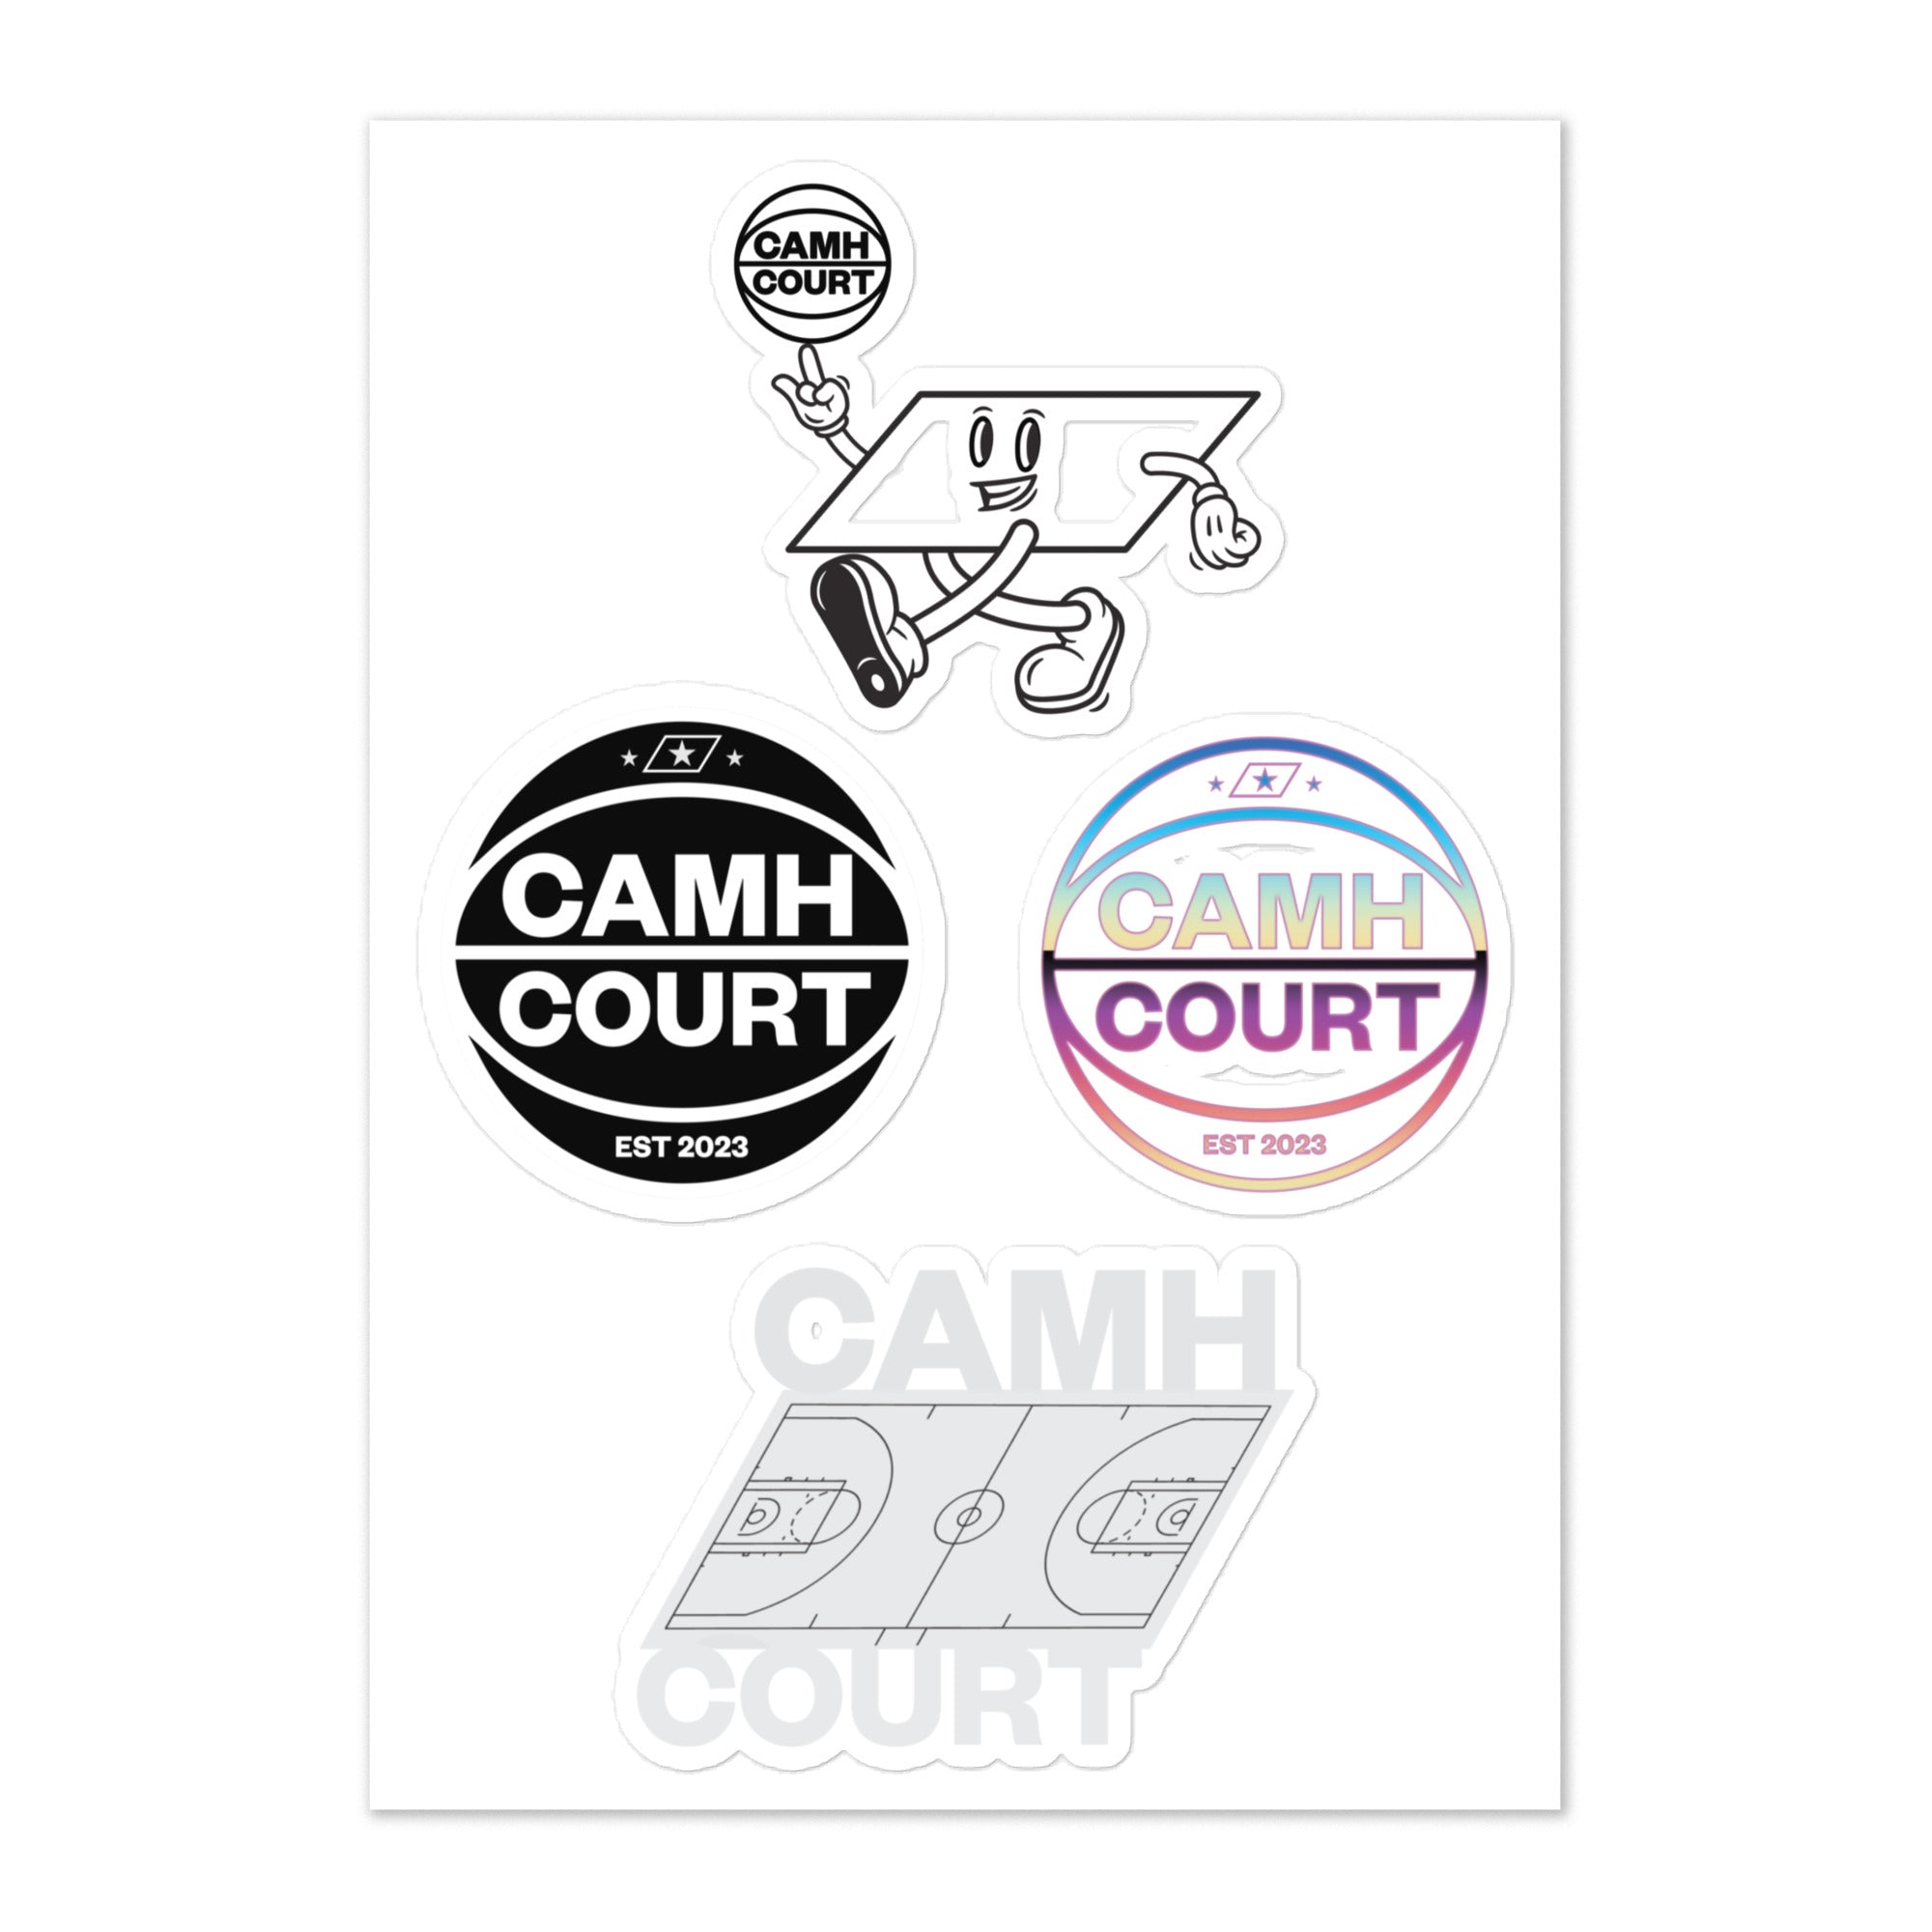 CAMH COURT Sticker Sheet (2)